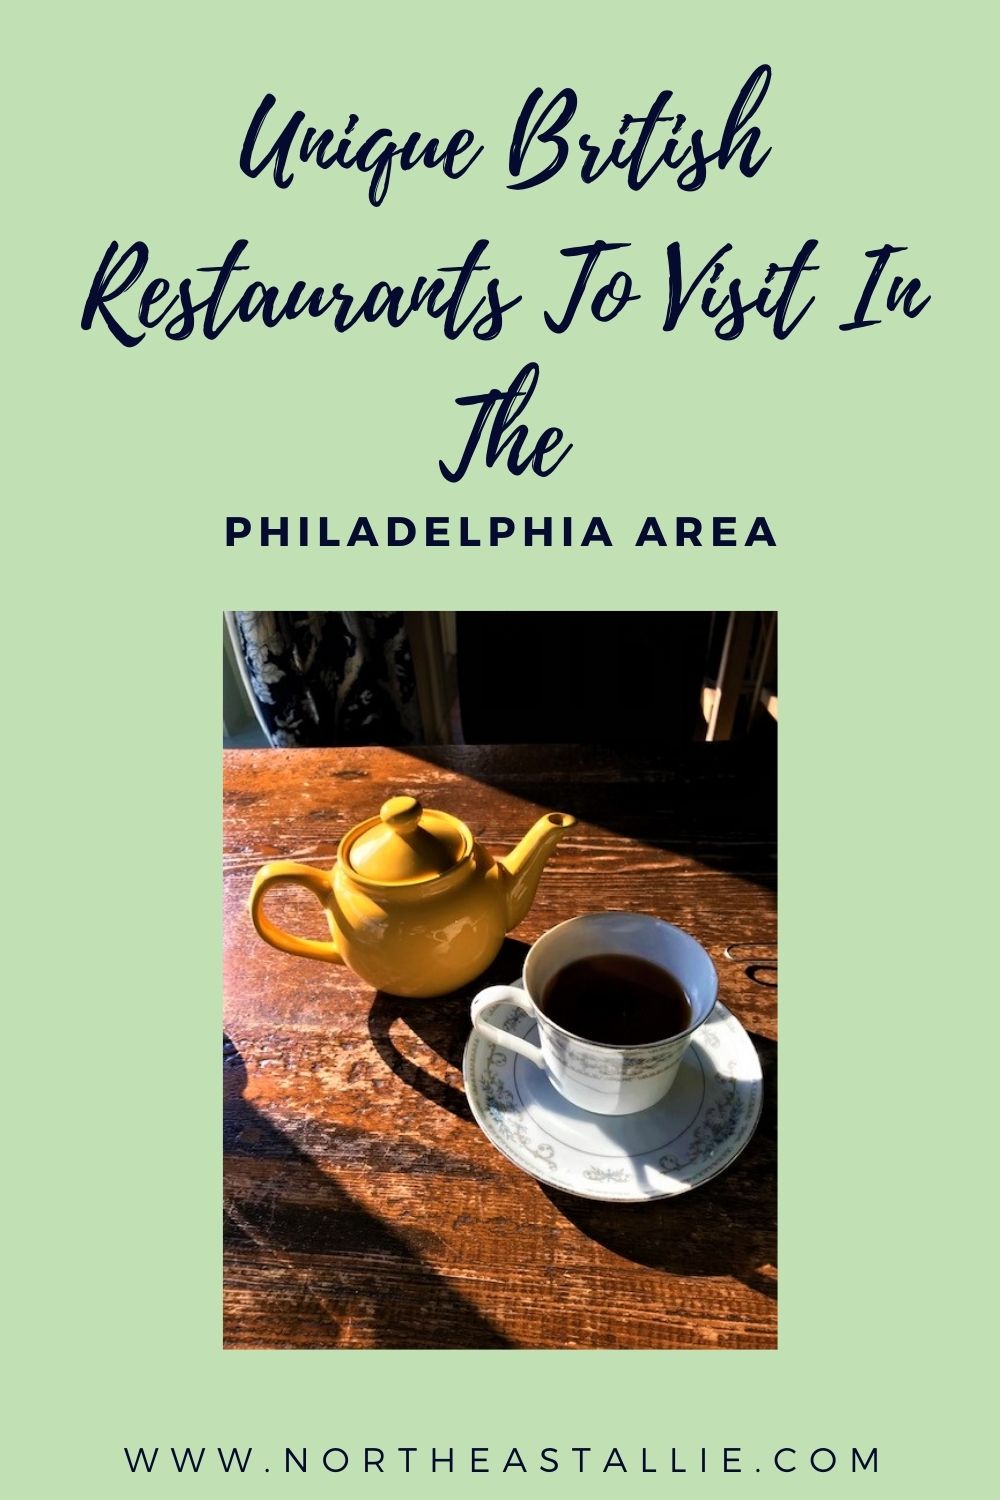 Unique British Restaurants To Visit In The Philadelphia Area